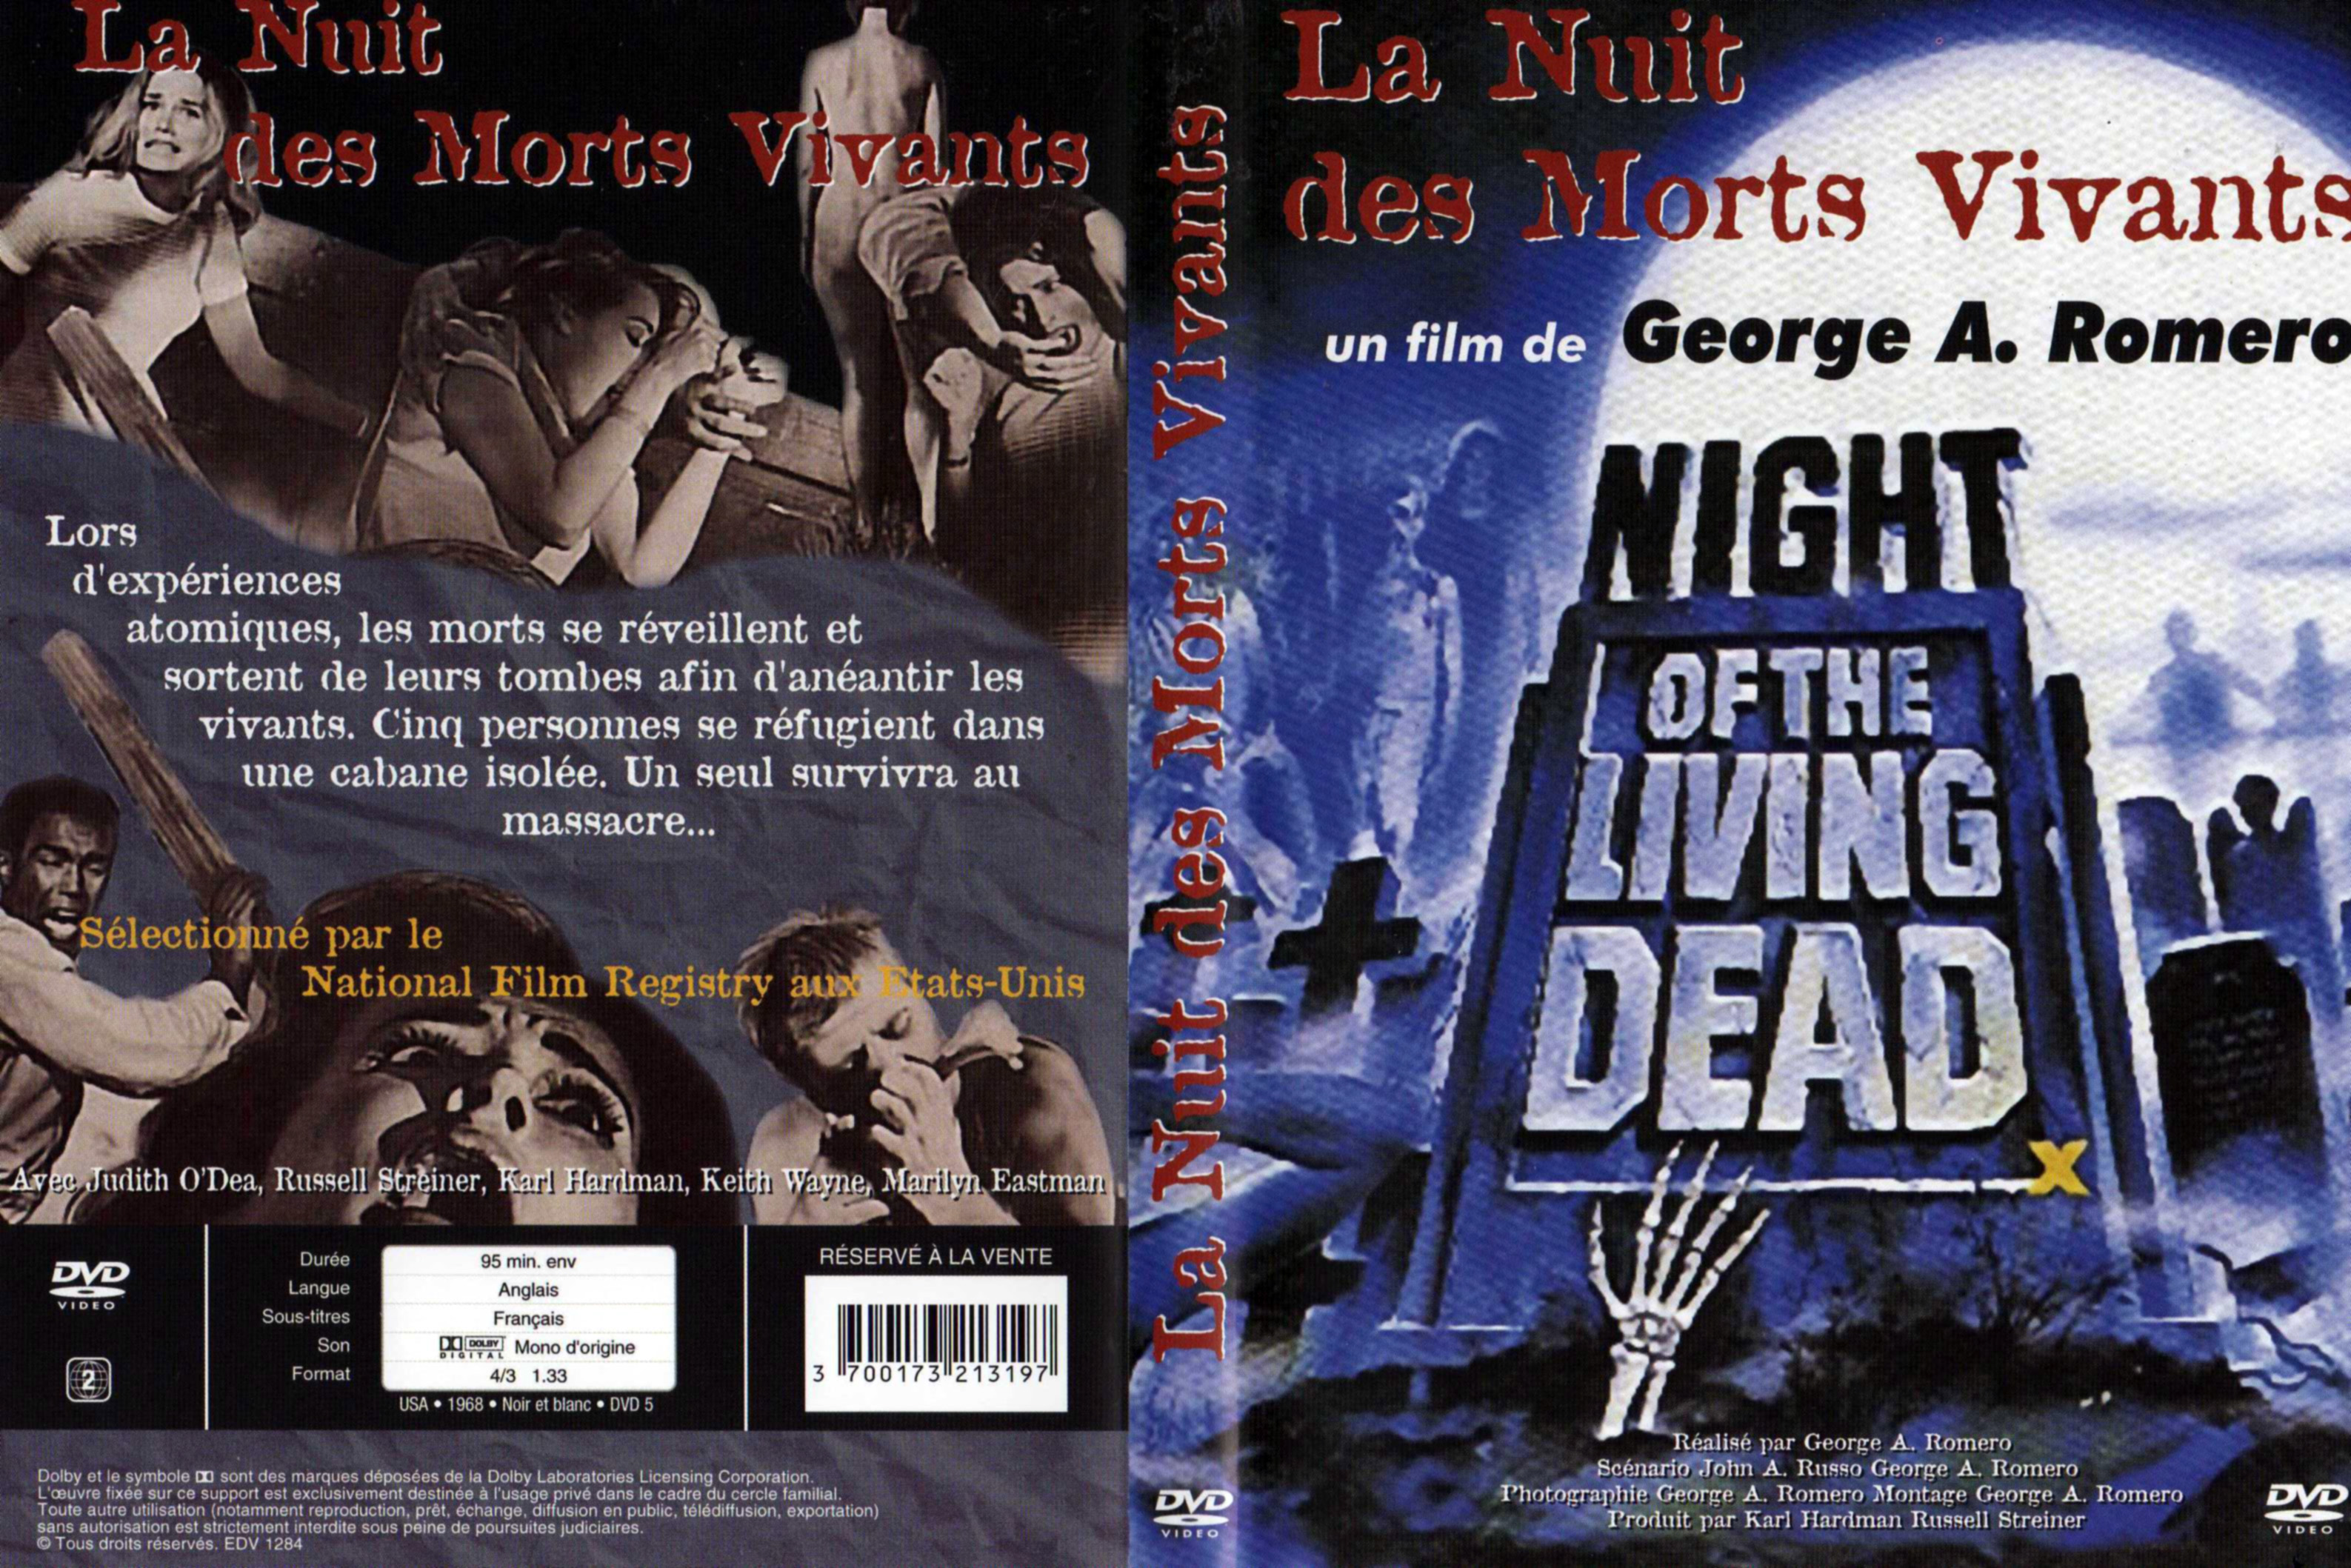 Jaquette DVD La nuit des morts vivants v4